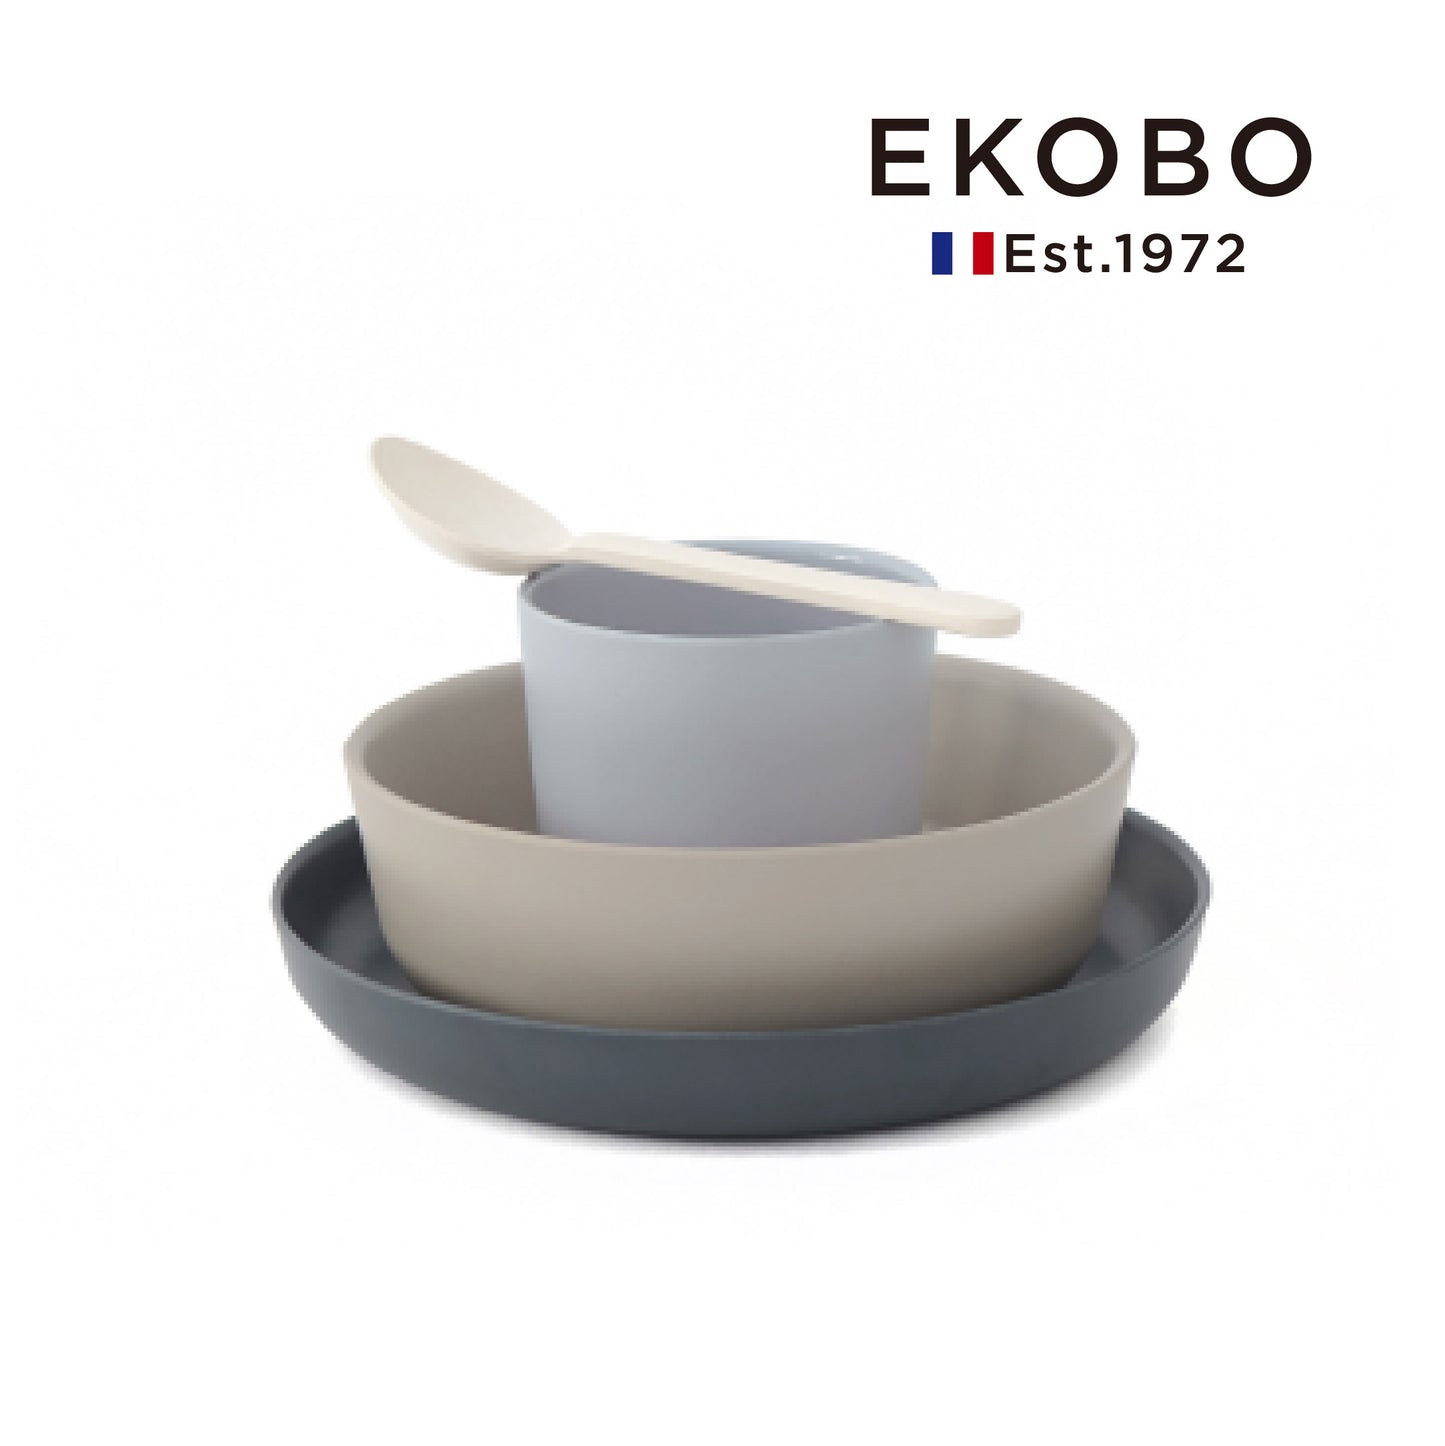 【EKOBO】Bamboo fiber children's tableware set of four-sesame cream (MIKU)